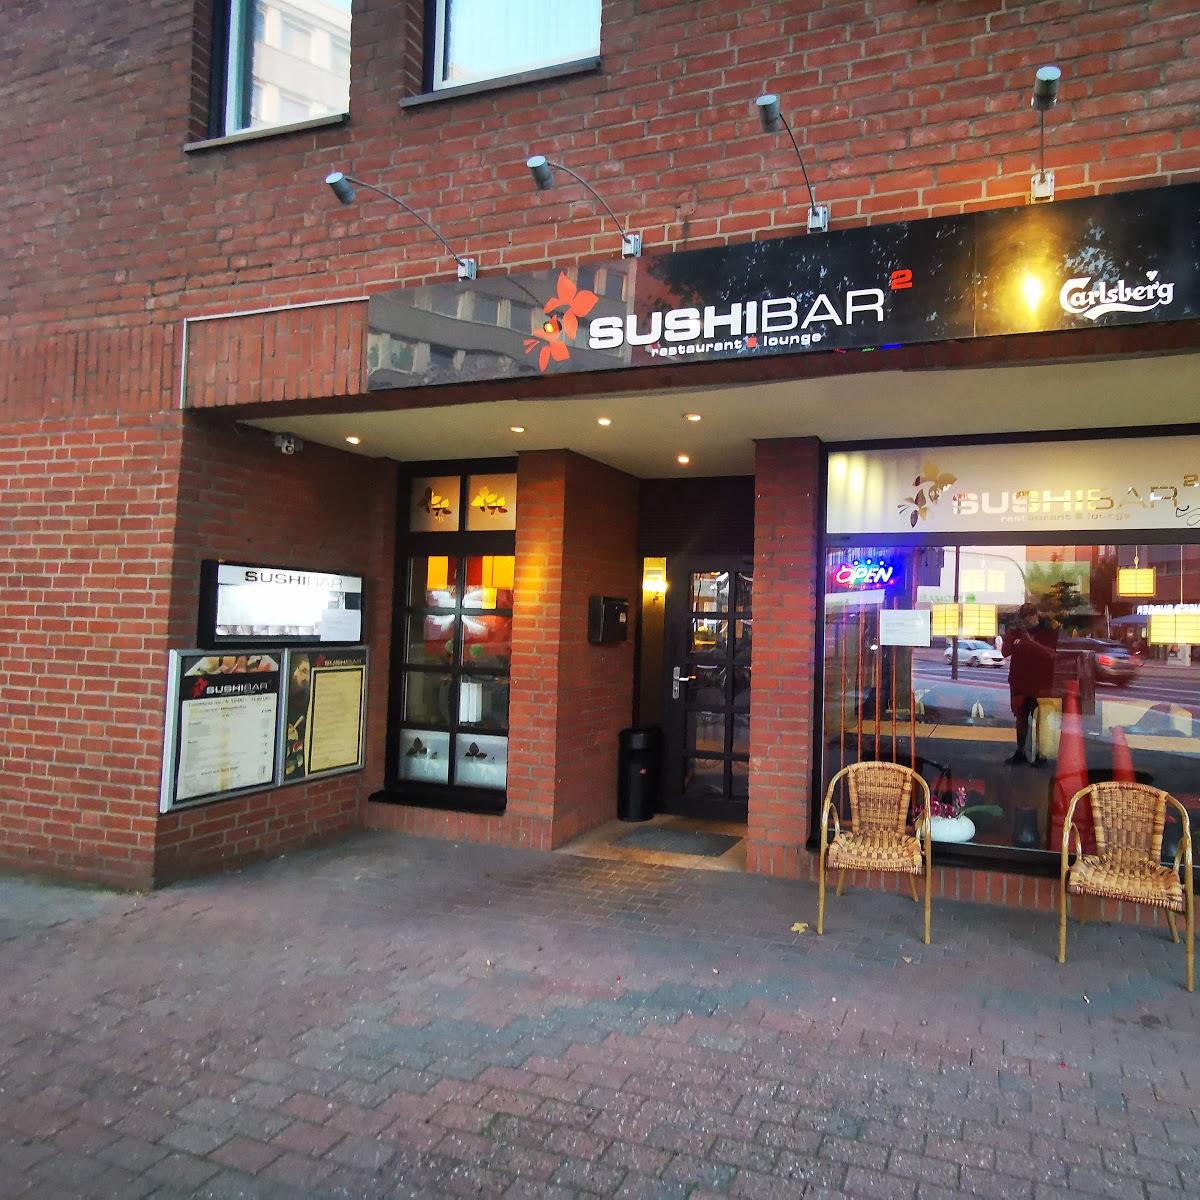 Restaurant "Sushibar Bergedorf" in  Hamburg